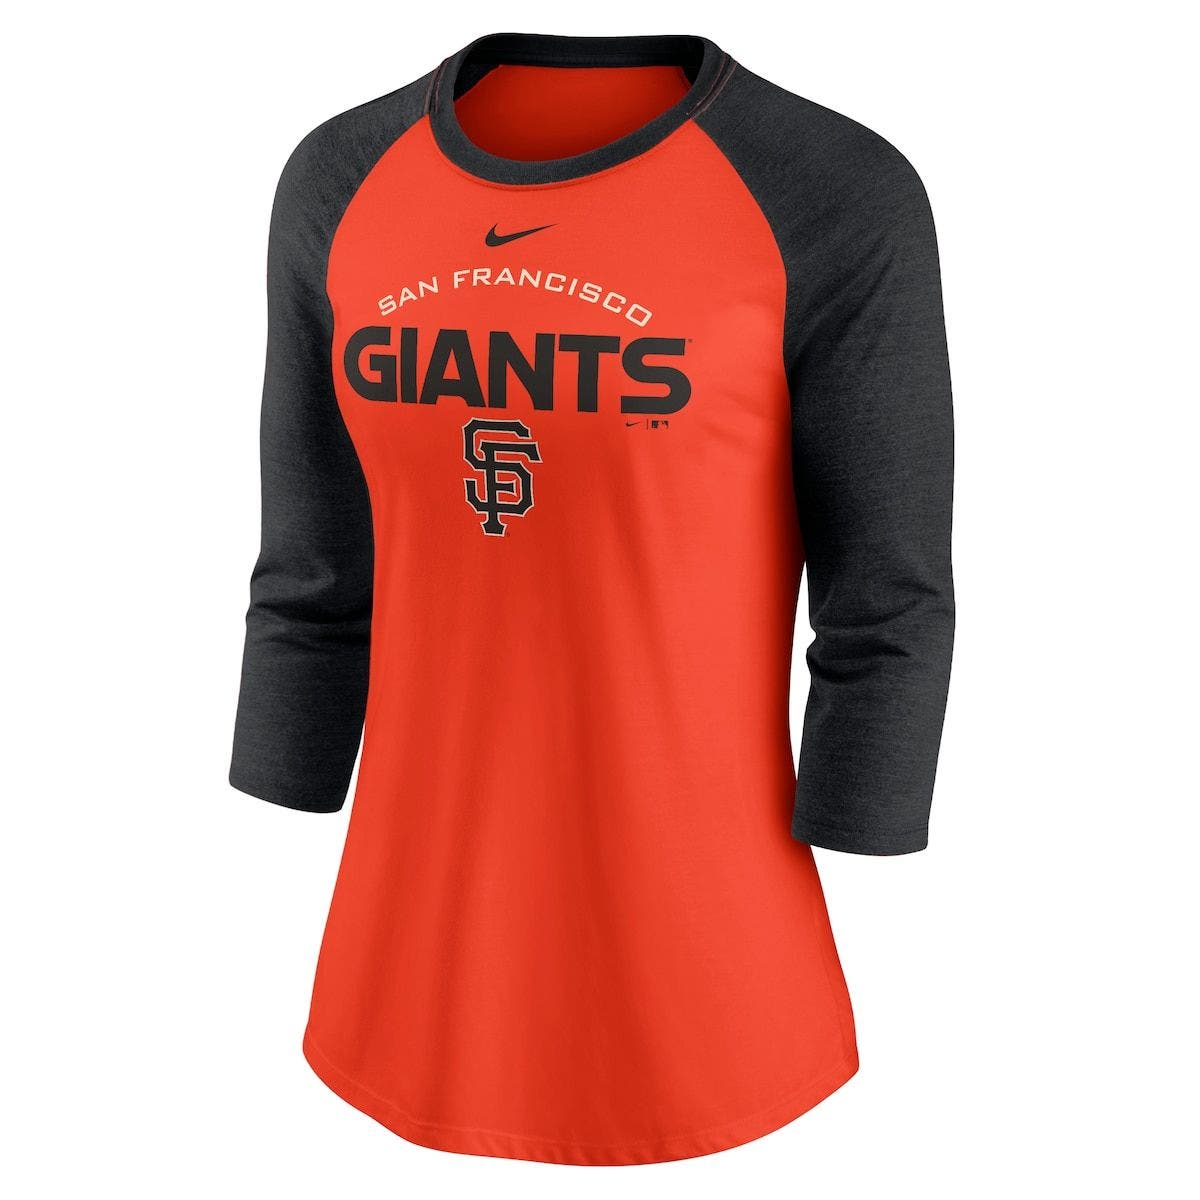 San Francisco Giants Baseball Long Sleeve  Shirt 